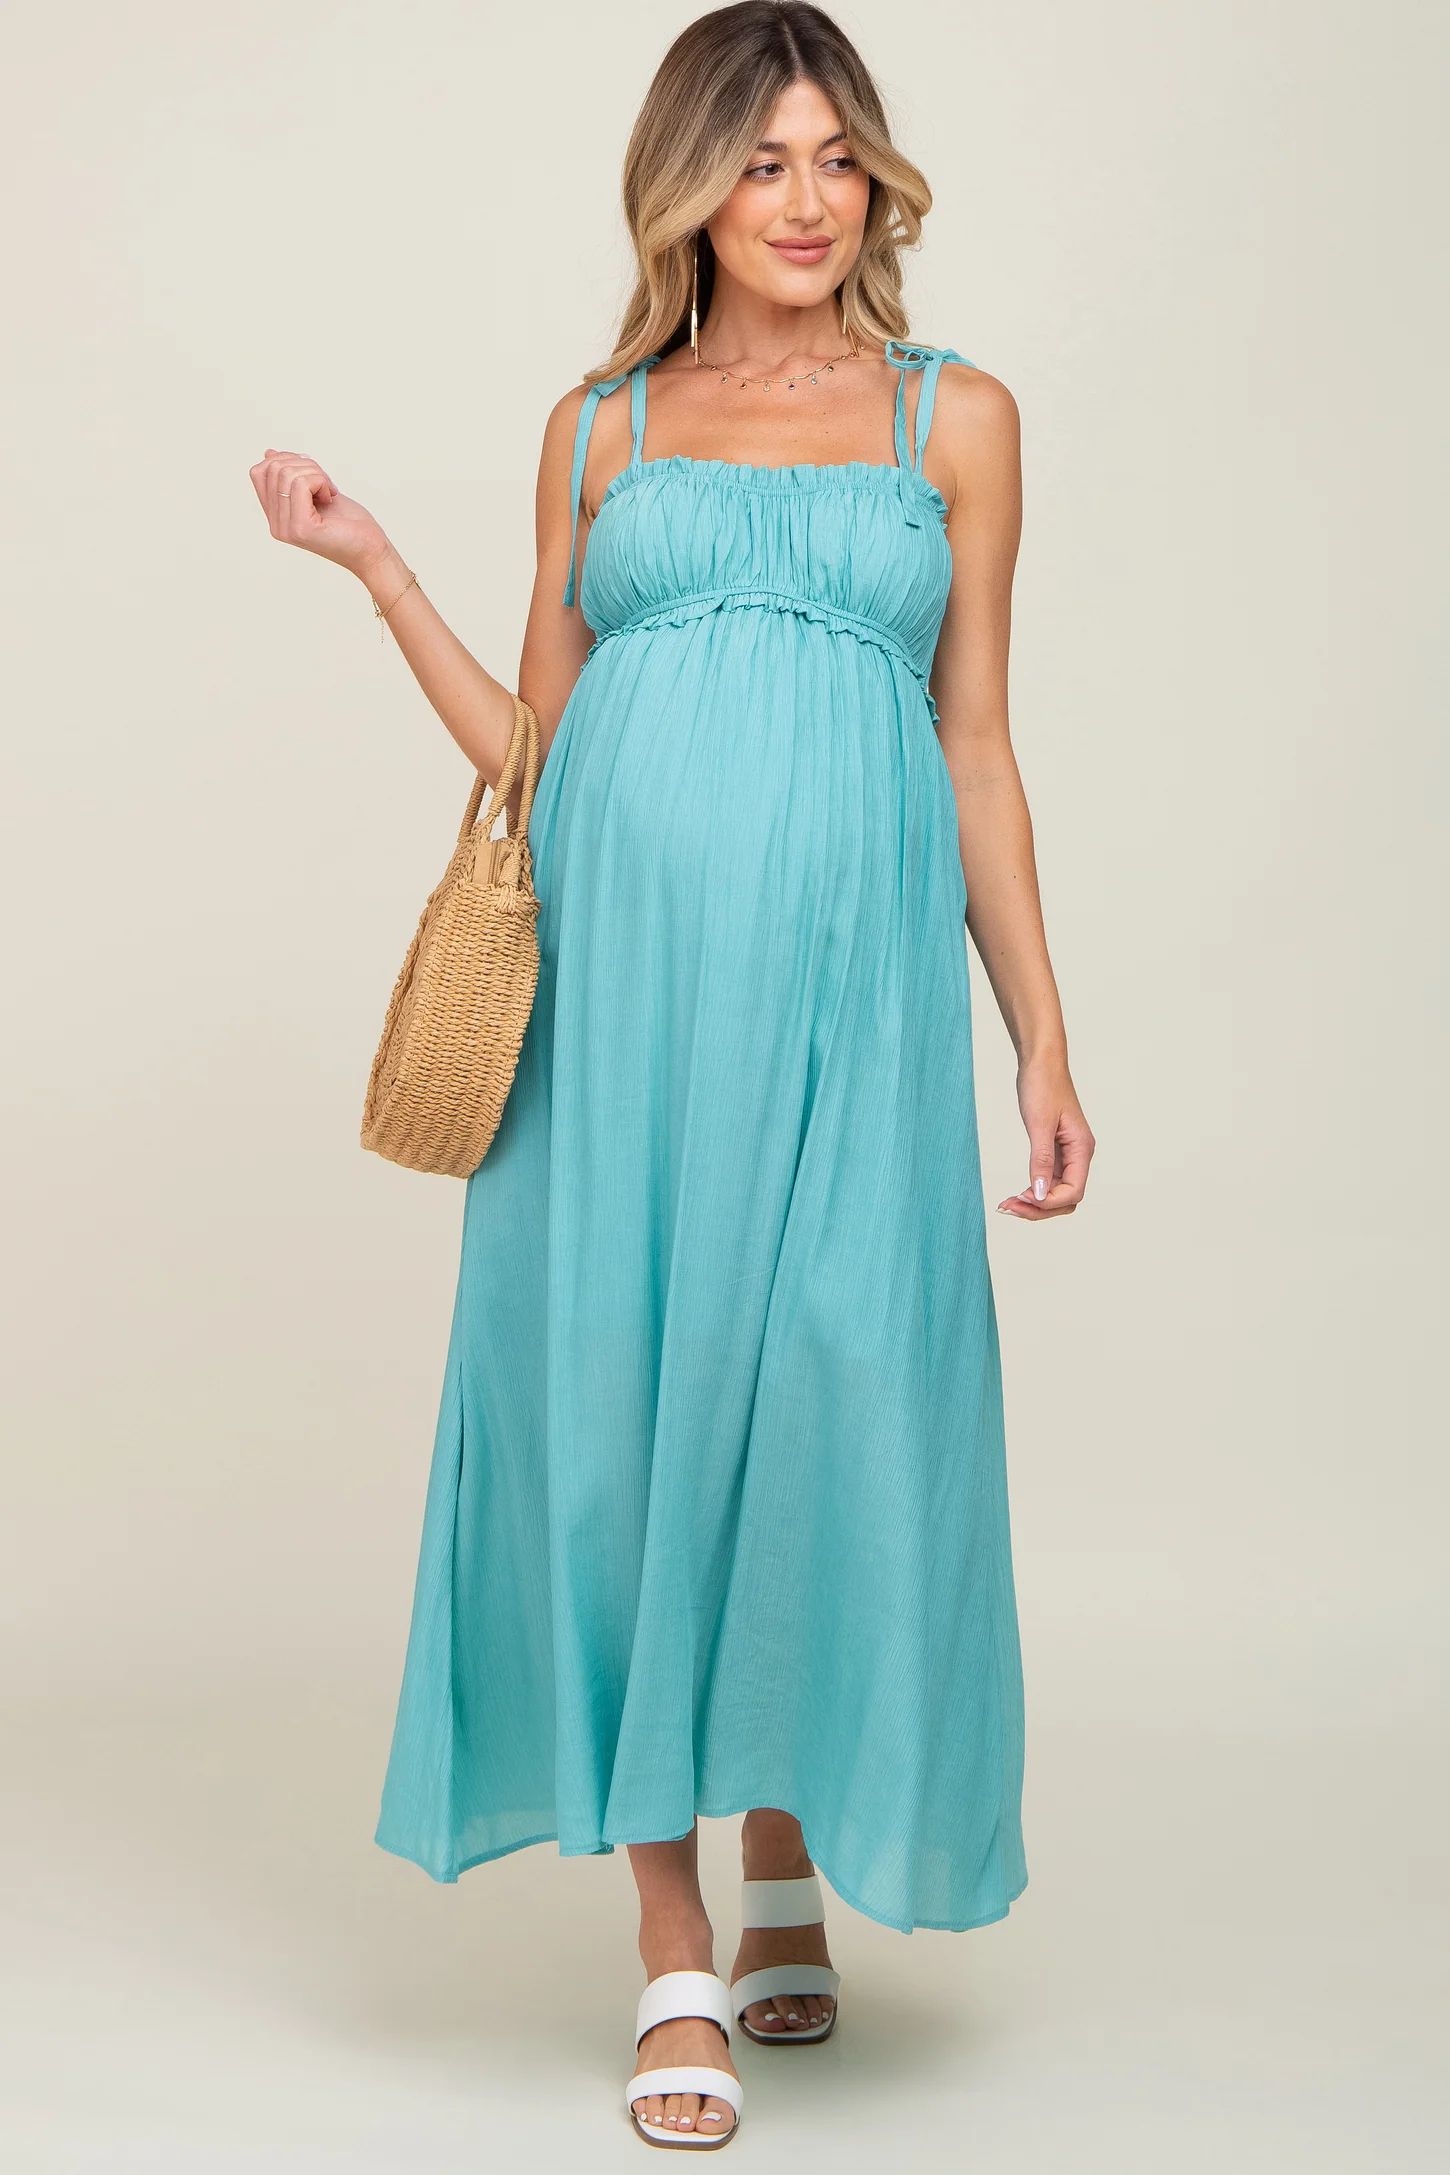 Turquoise Sleeveless Ruffle Trim Maternity Maxi Dress | PinkBlush Maternity